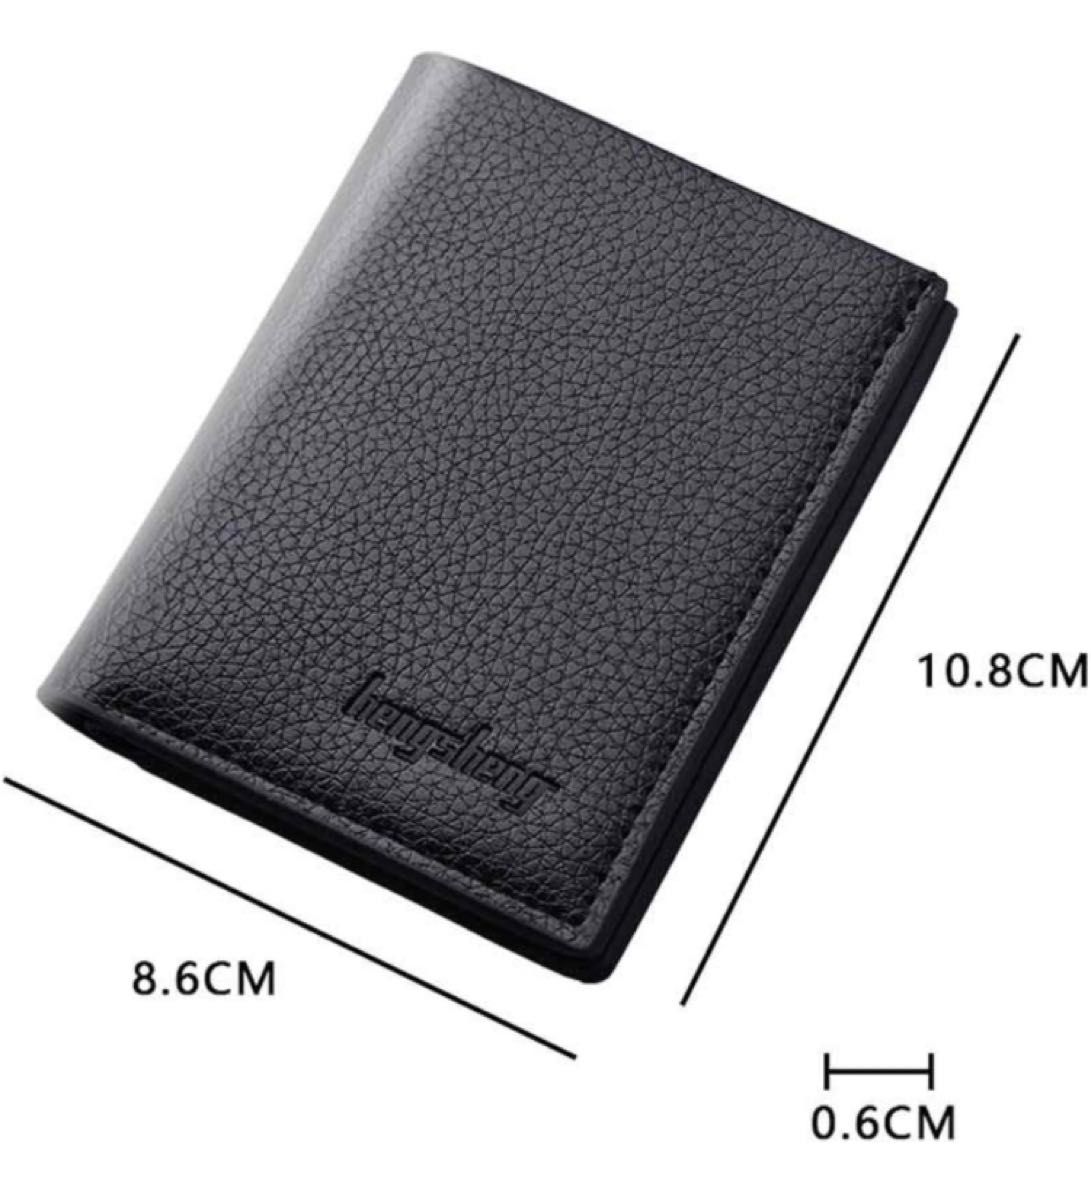 【二つ折り財布】メンズ ブラウン 茶色 シンプル カード収納 薄型 ビジネス お札入れ コンパクト 